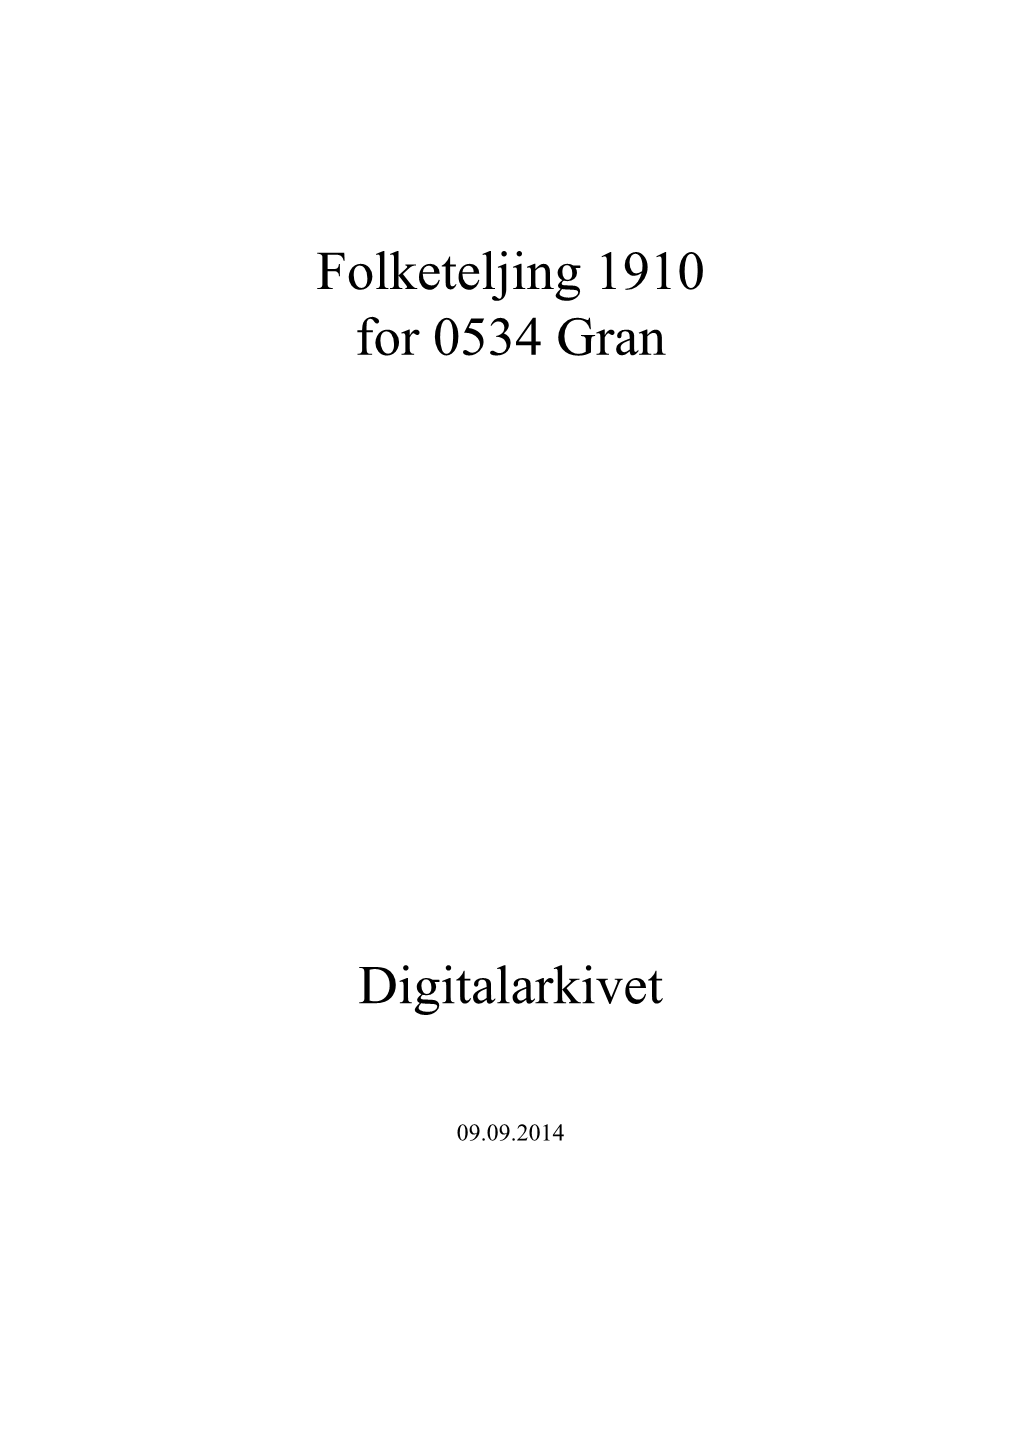 Folketeljing 1910 for 0534 Gran Digitalarkivet